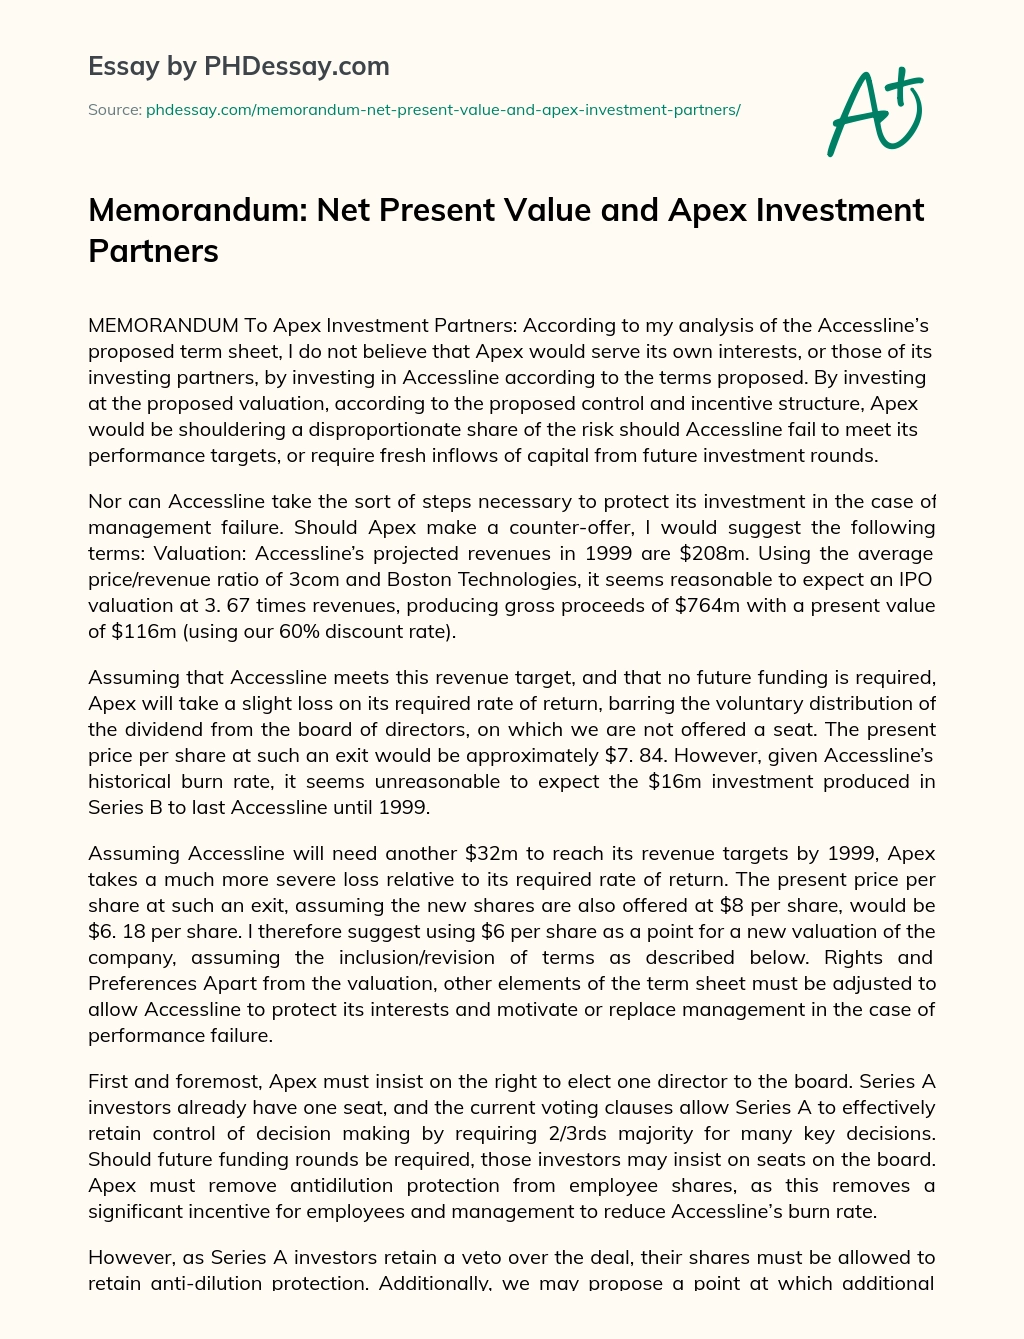 Memorandum: Net Present Value and Apex Investment Partners essay